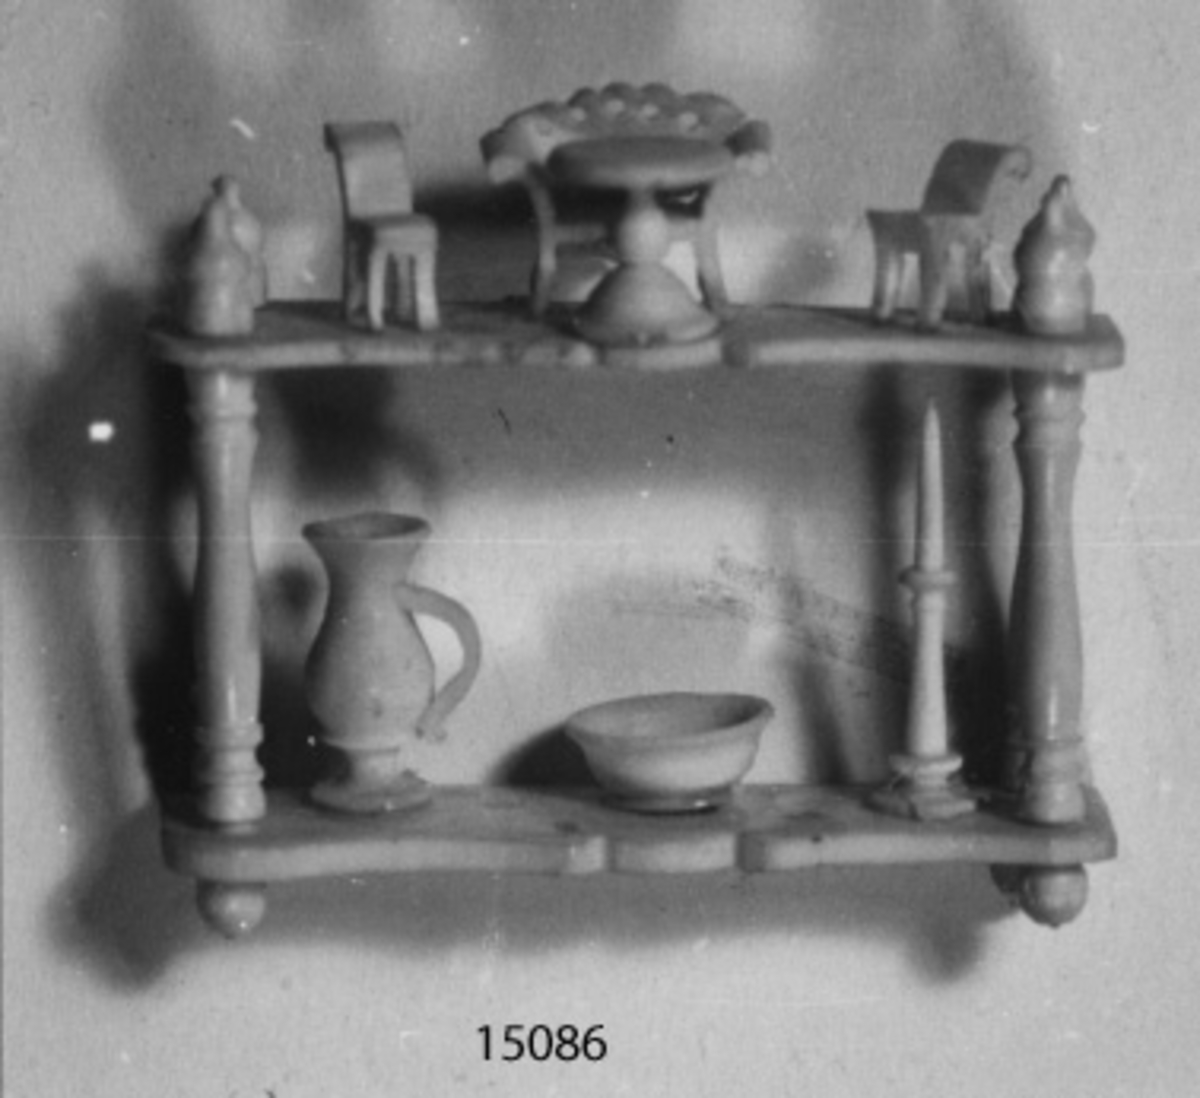 Scrimshaw (modell av atentienne). Sjömansarbete i ben i form av en atenienne med dockmöbler, kanna, skål och ljusstake.